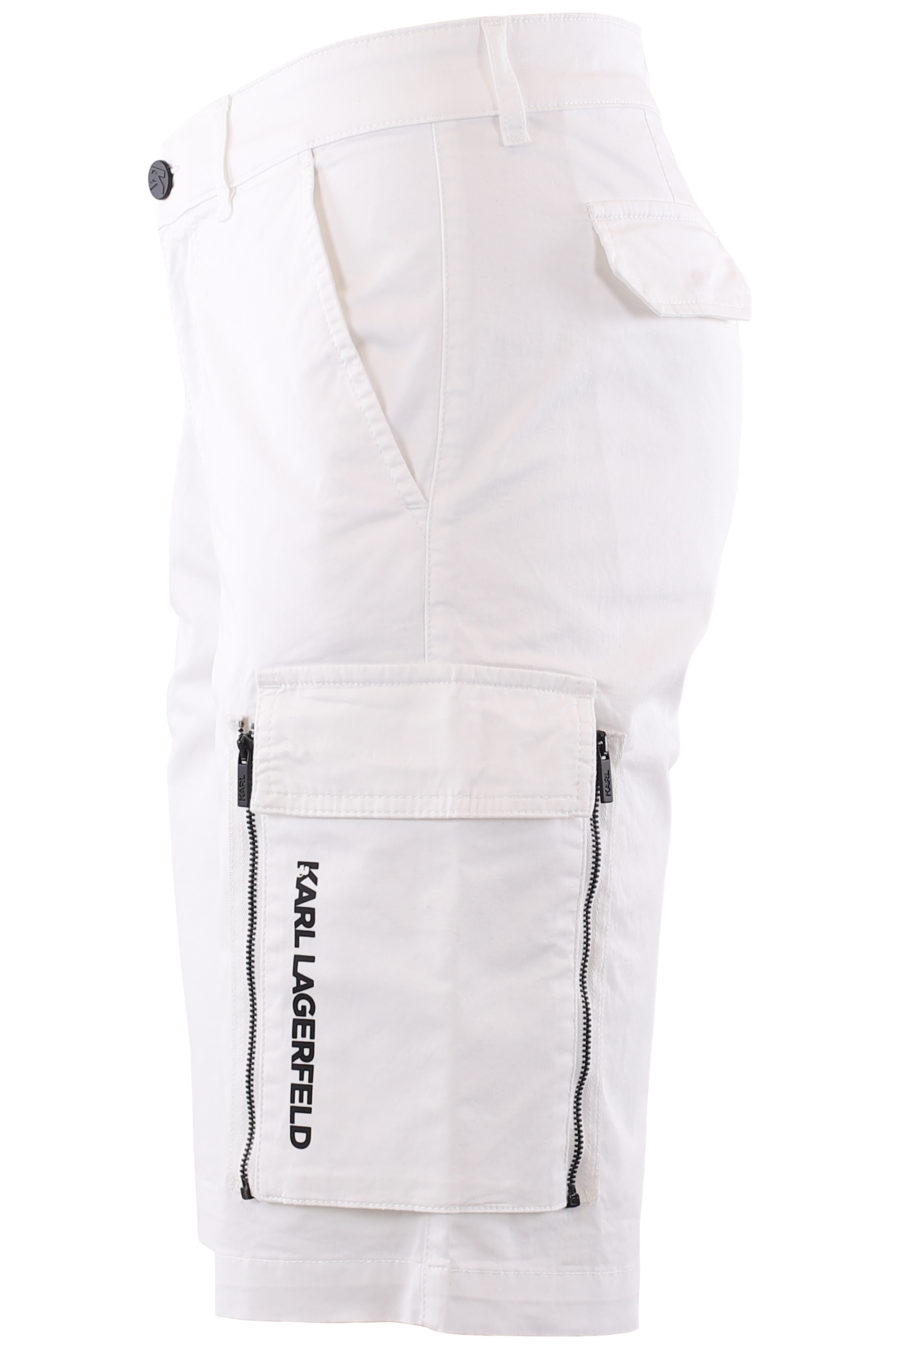 Pantalón corto blanco cargo - IMG 6631